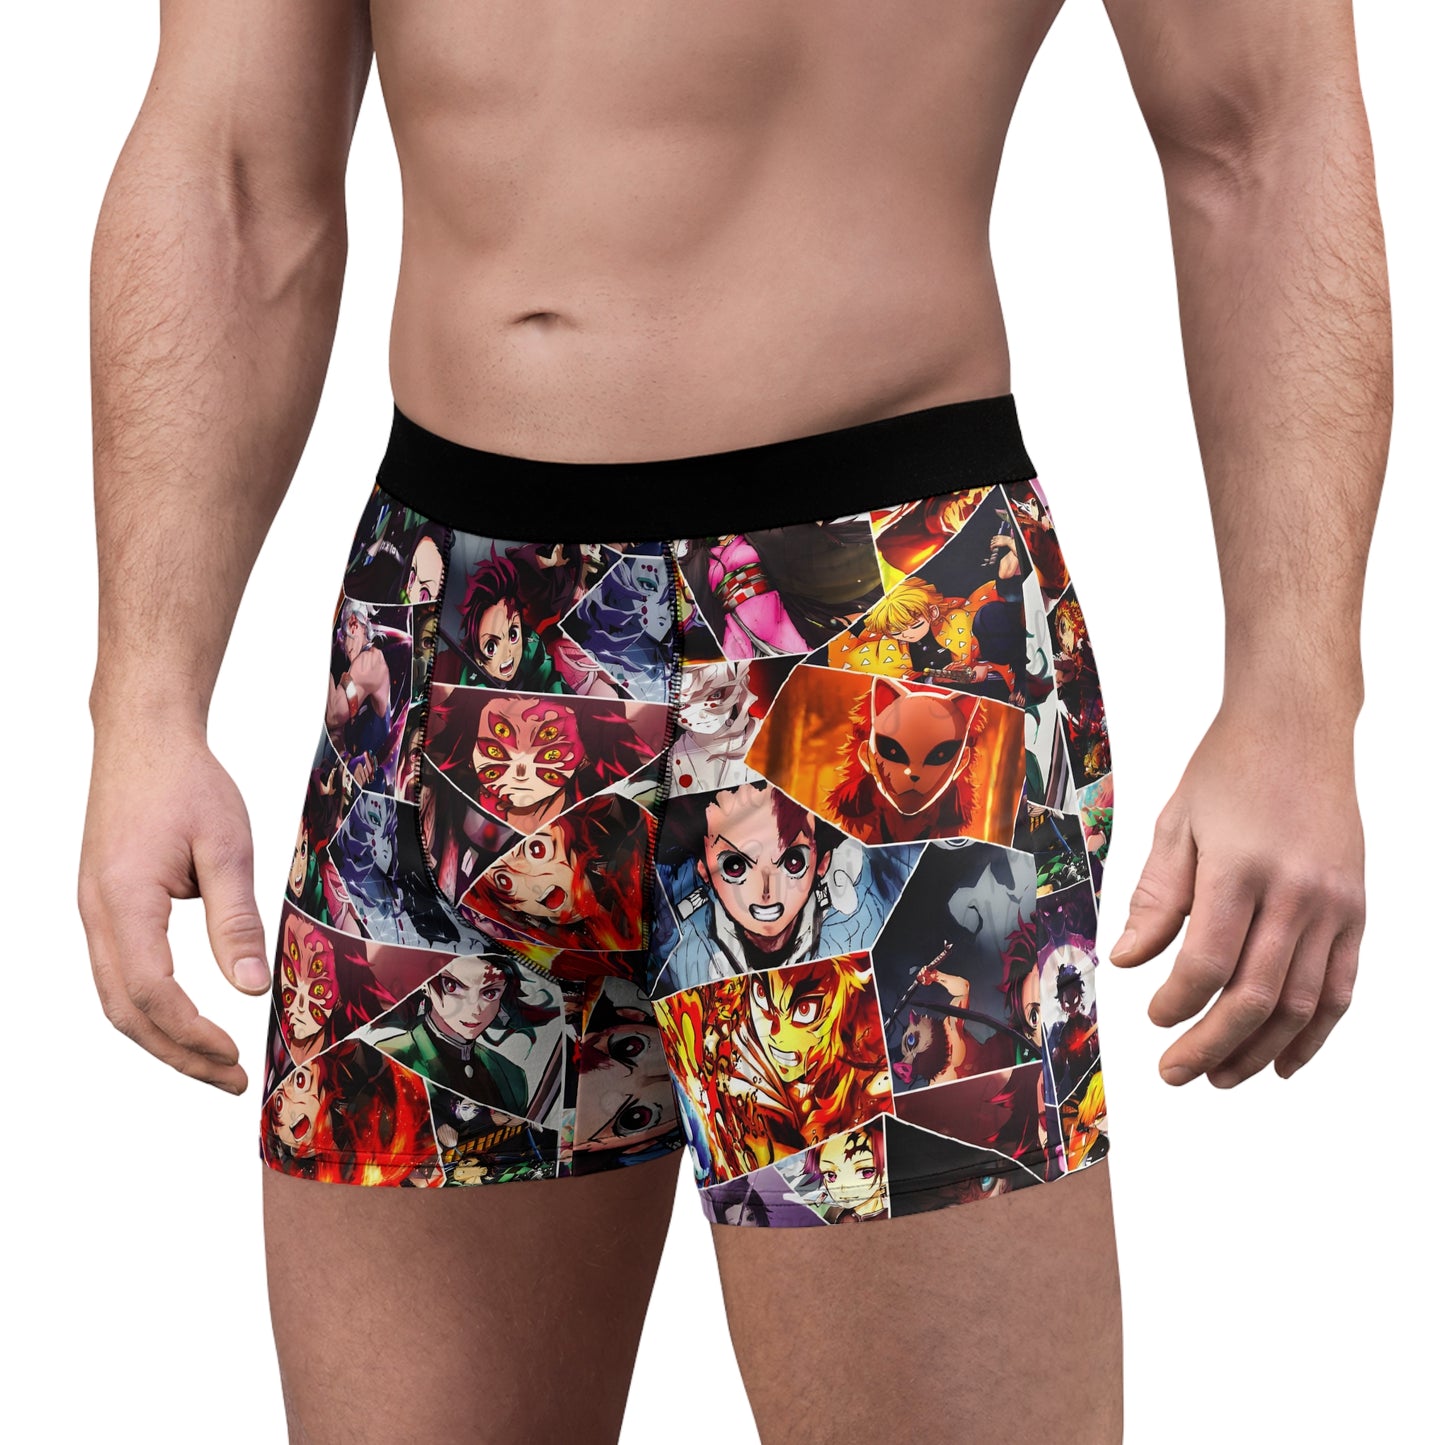 Demon Slayer Reflections Collage Men's Boxer Briefs Underwear